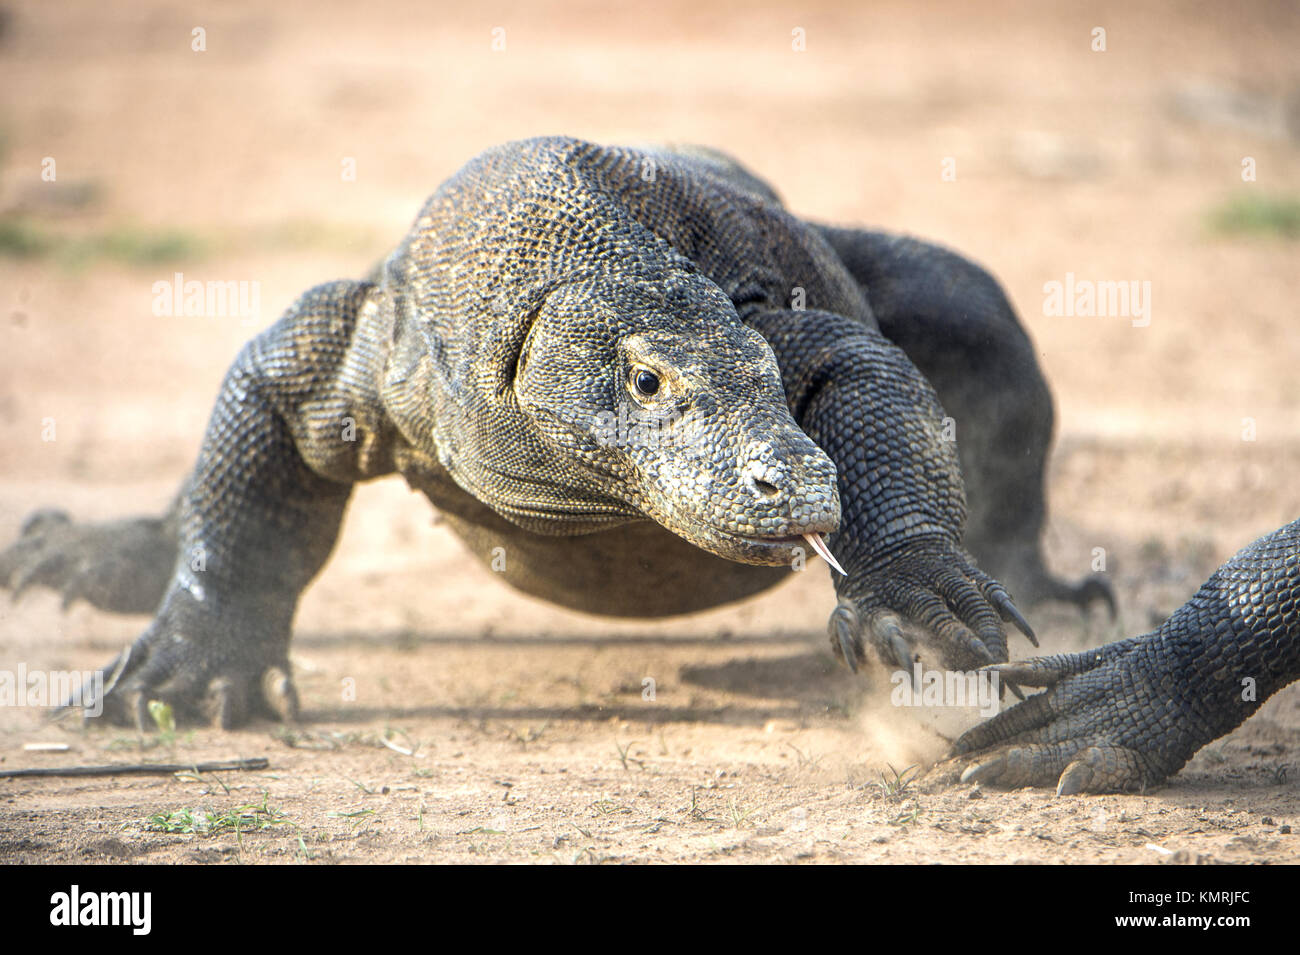 Attacco di un drago di Komodo. Il drago in esecuzione sulla sabbia. L'esecuzione di drago di Komodo (Varanus komodoensis ) . È la più grande lucertola vivente nel mondo. Foto Stock